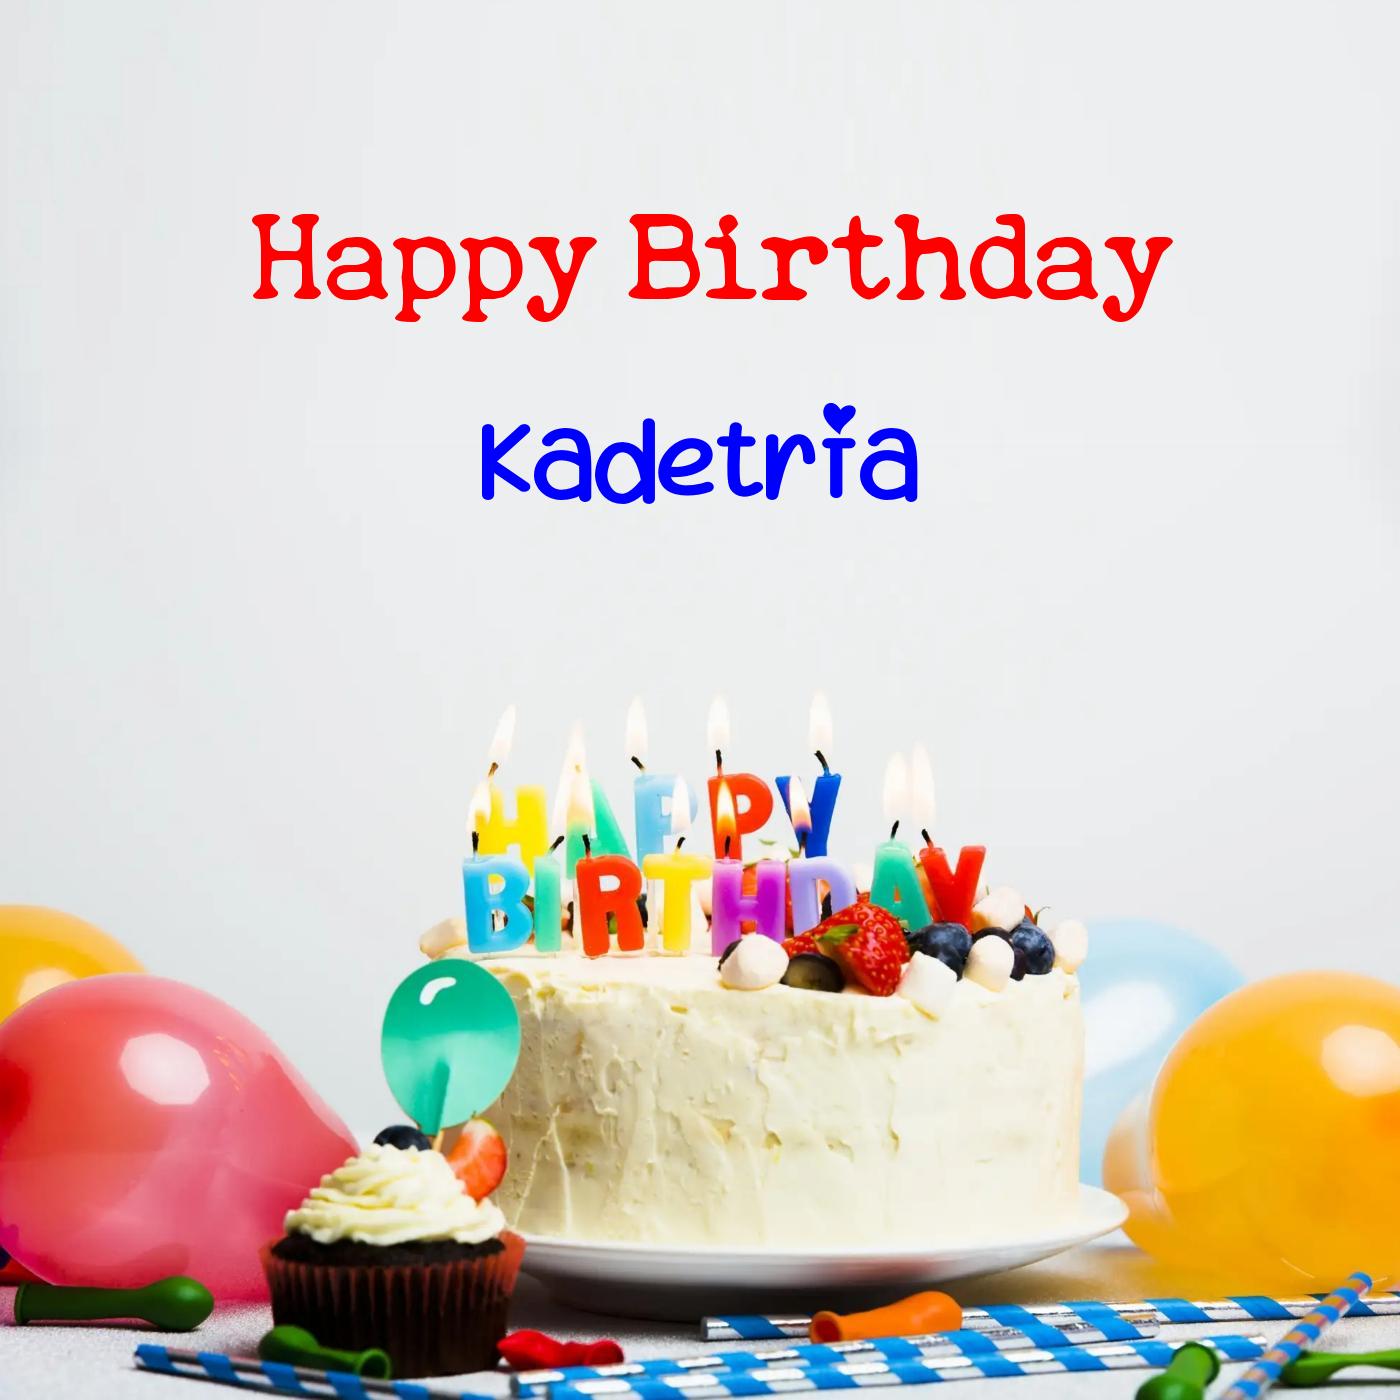 Happy Birthday Kadetria Cake Balloons Card